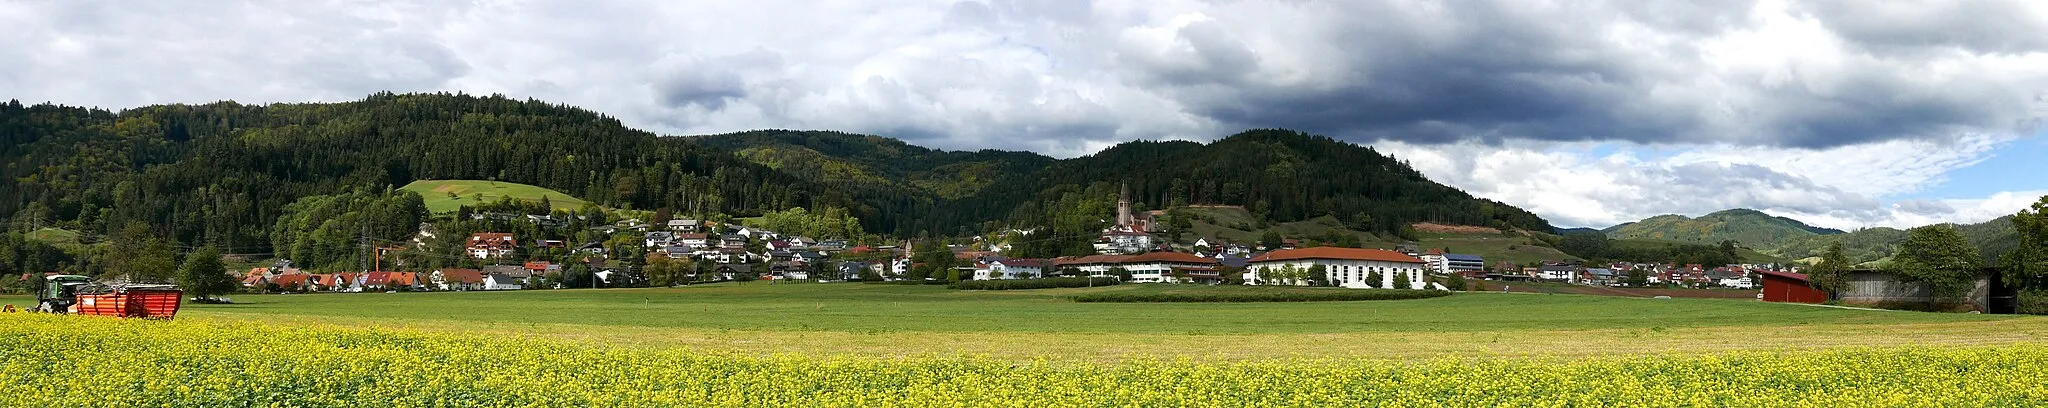 Afbeelding van Freiburg